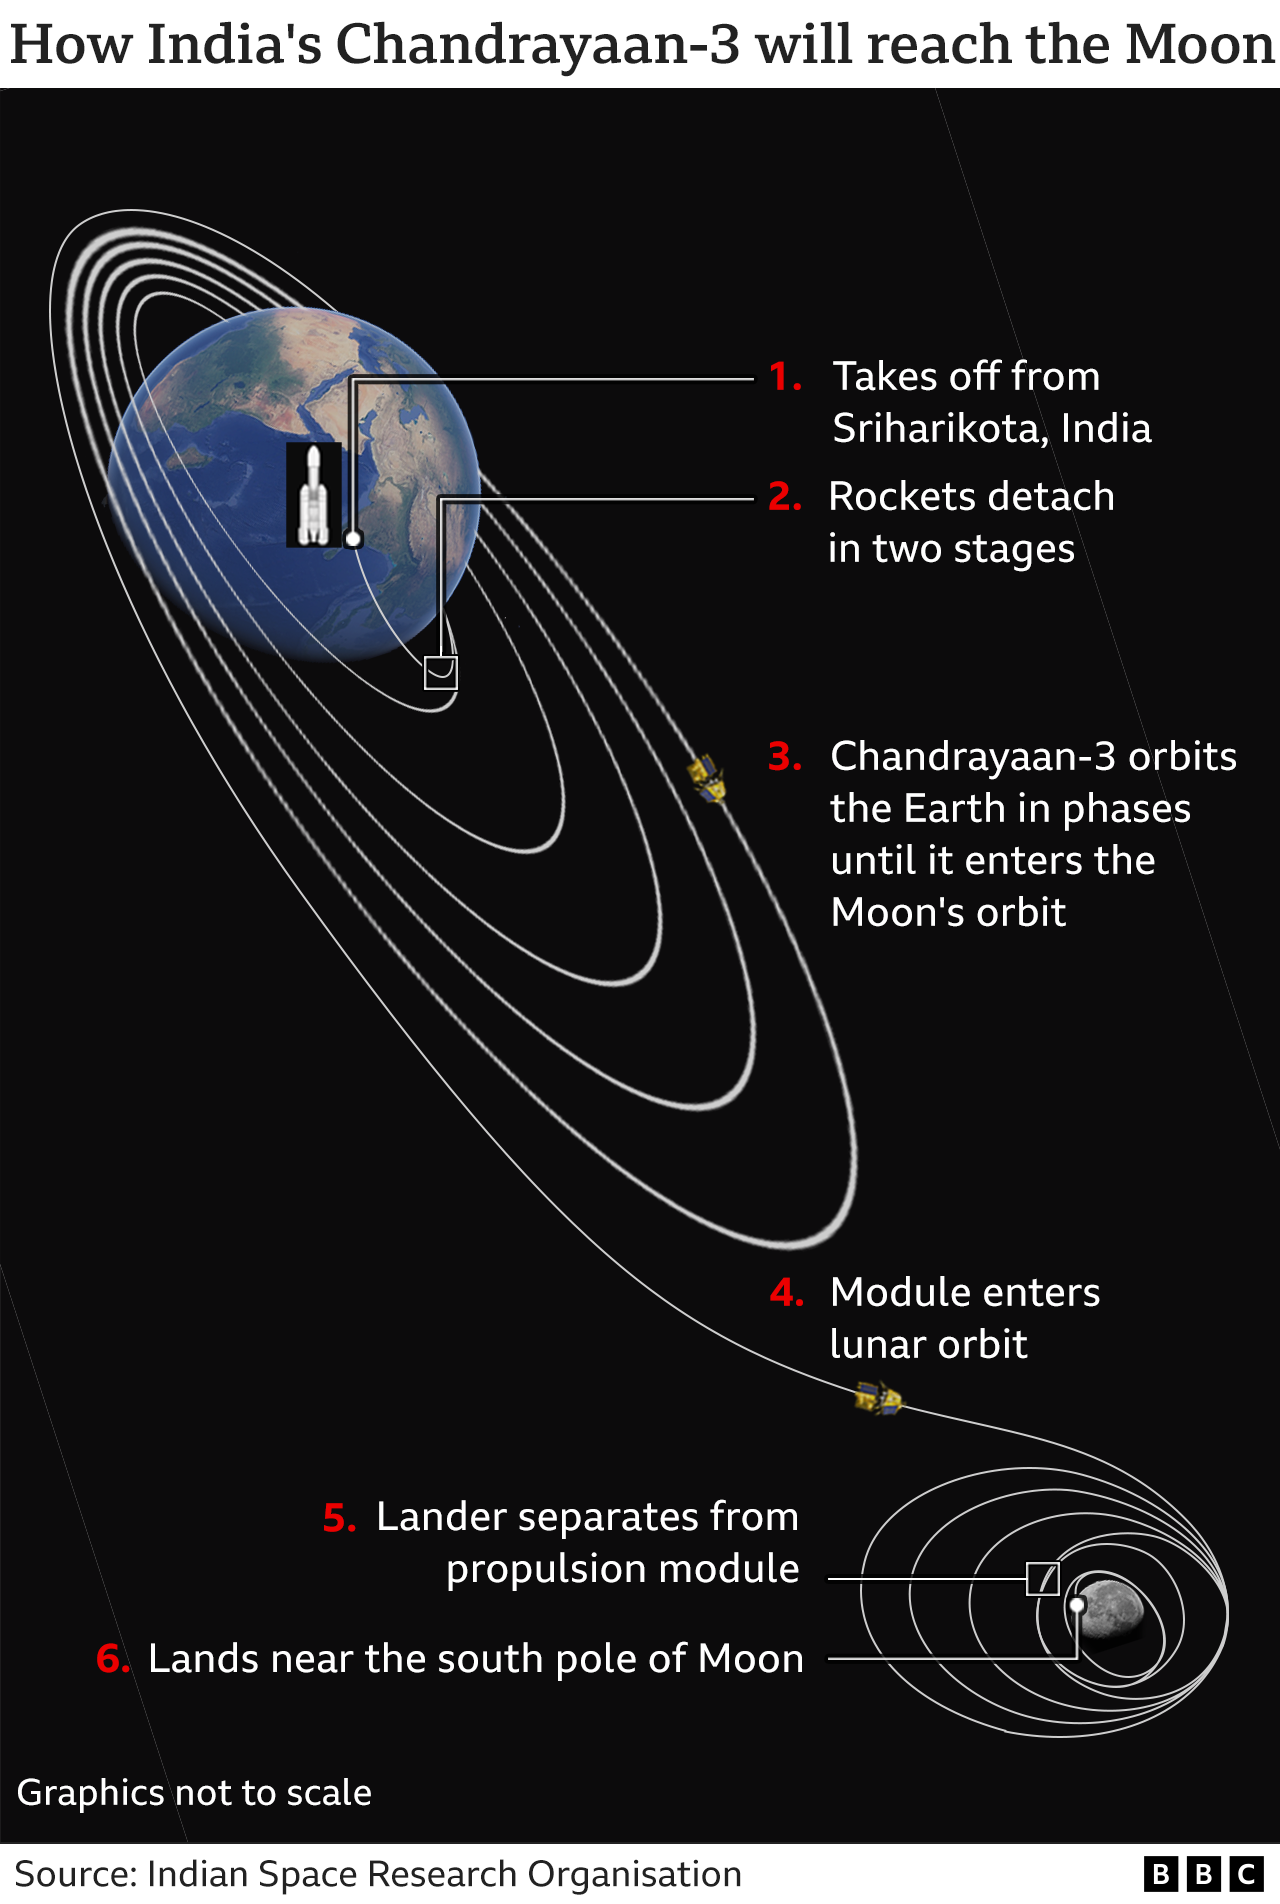 Графика, показывающая, как Chandrayaan-3 доберется до Луны, от взлета до обращения вокруг Земли по фазам, пока он не достигнет орбиты Луны, когда посадочный модуль отделится от двигательного модуля и приземлится возле южного полюса Луны